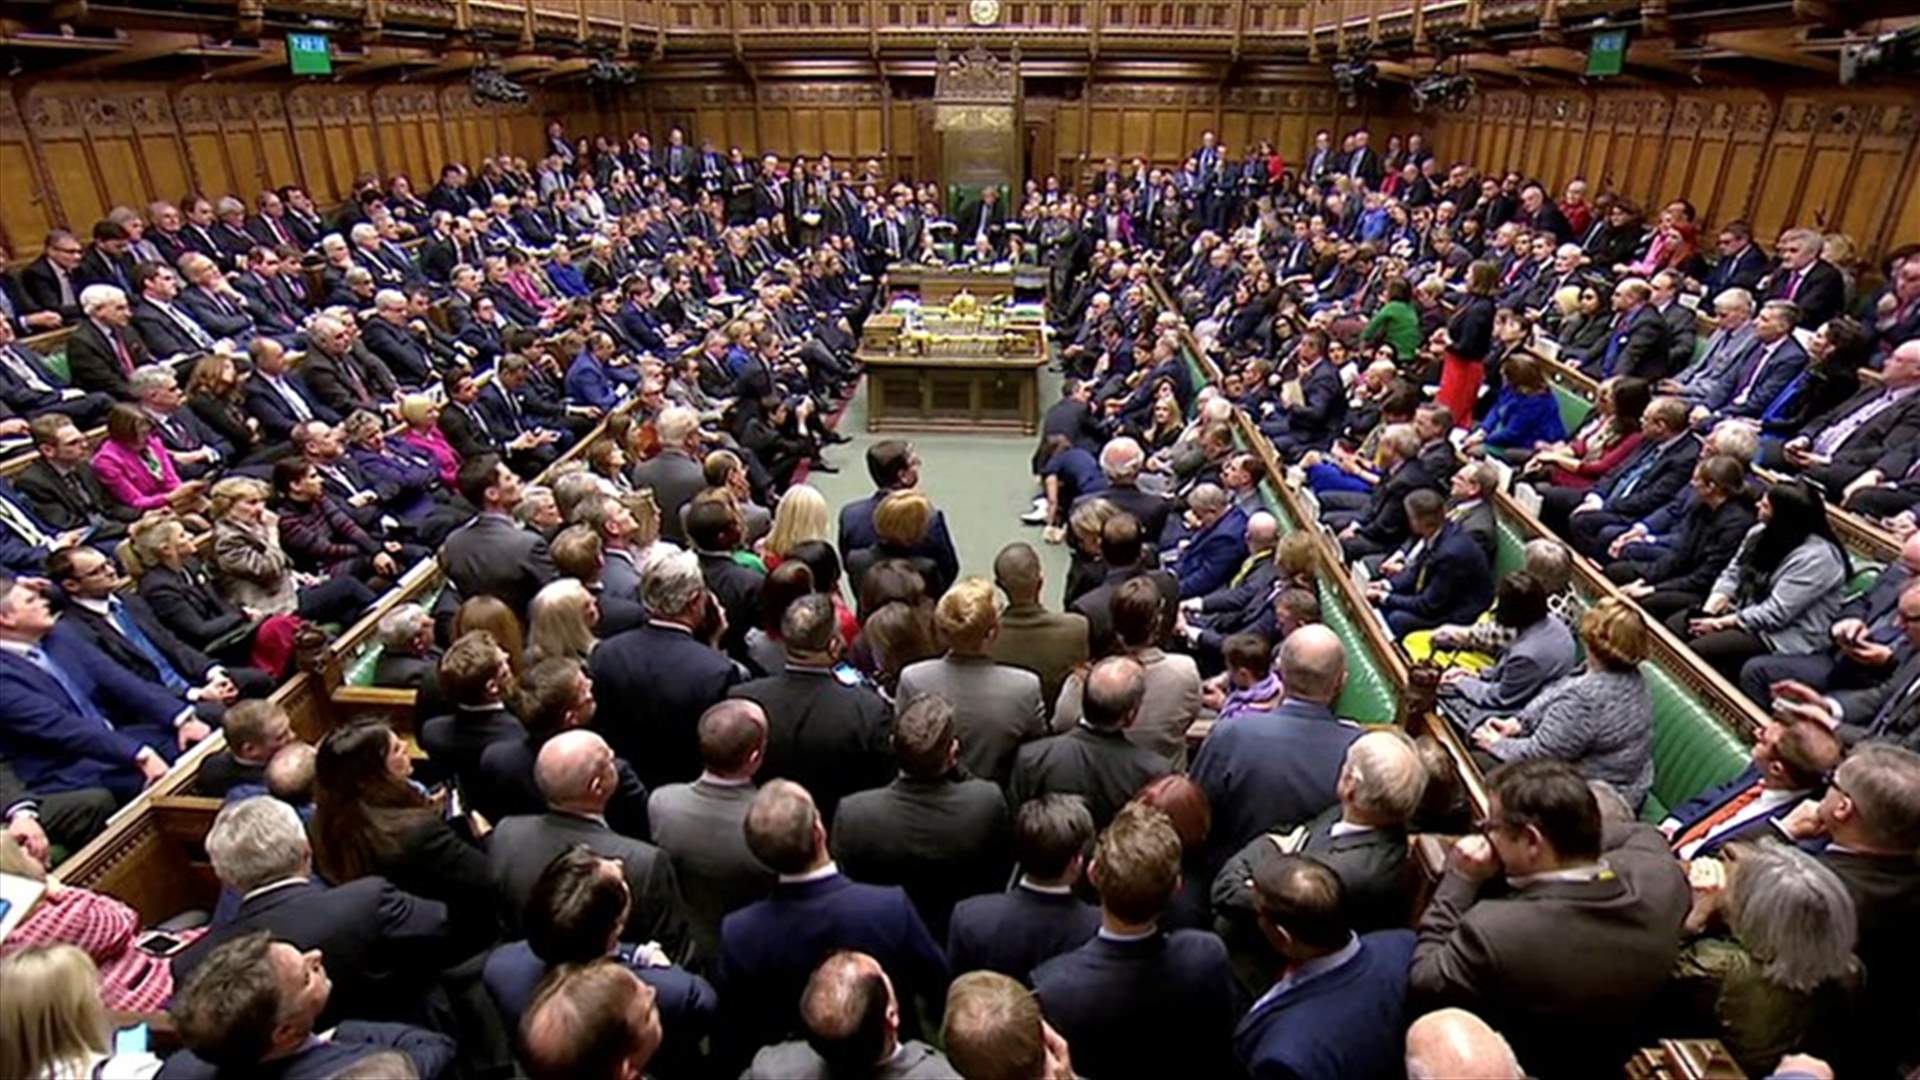 البرلمان البريطاني يرفض اتفاق بريكست بغالبية ساحقة